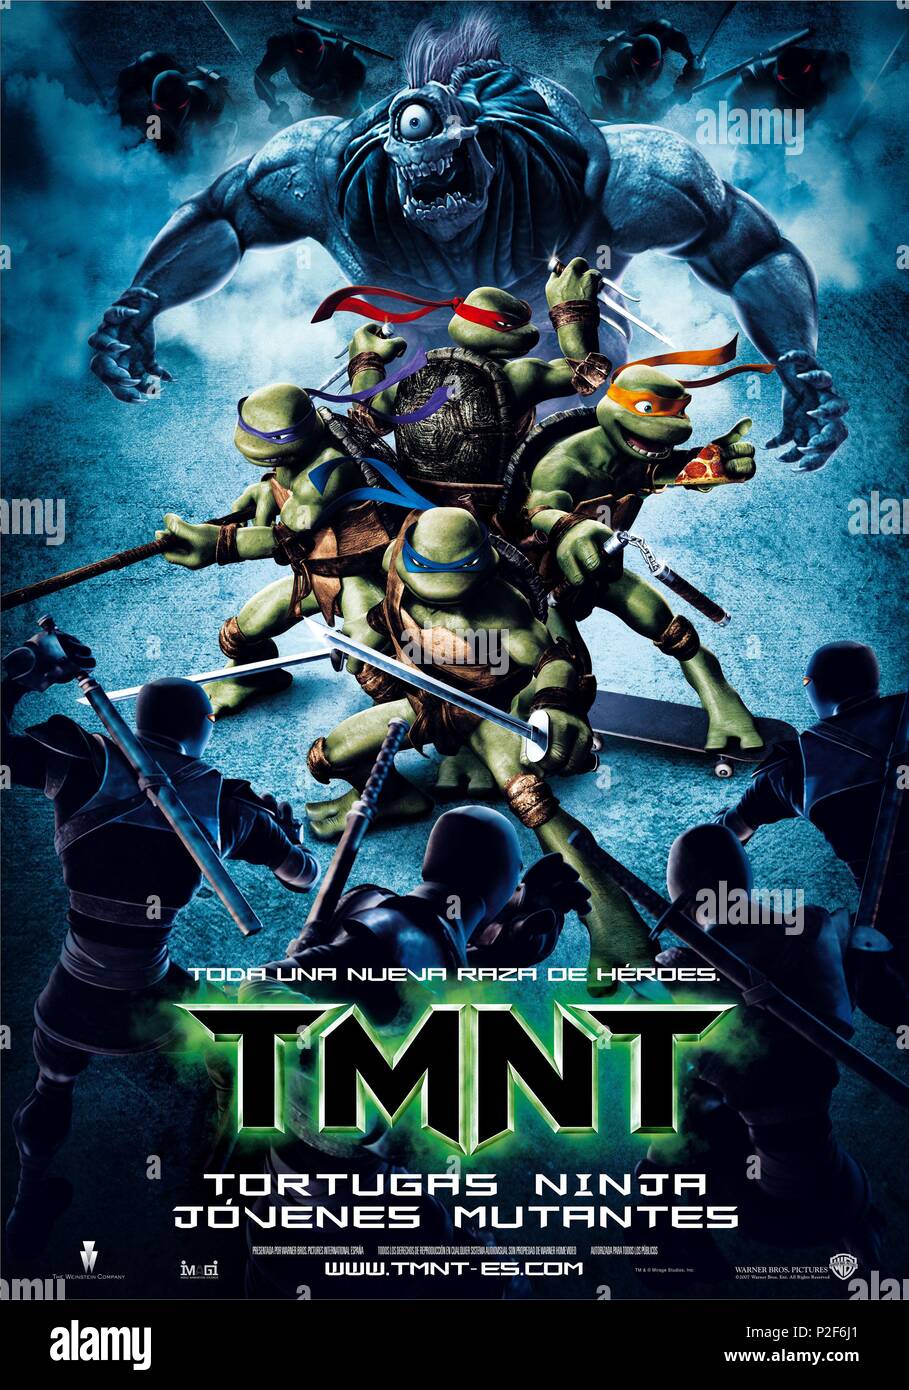 TMNT (2007) TEENAGE MUTANT NINJA TURTLES (ALT) SPLINTER, RAPHAEL, LEONARDO  TMNT 001-42 Stock Photo - Alamy